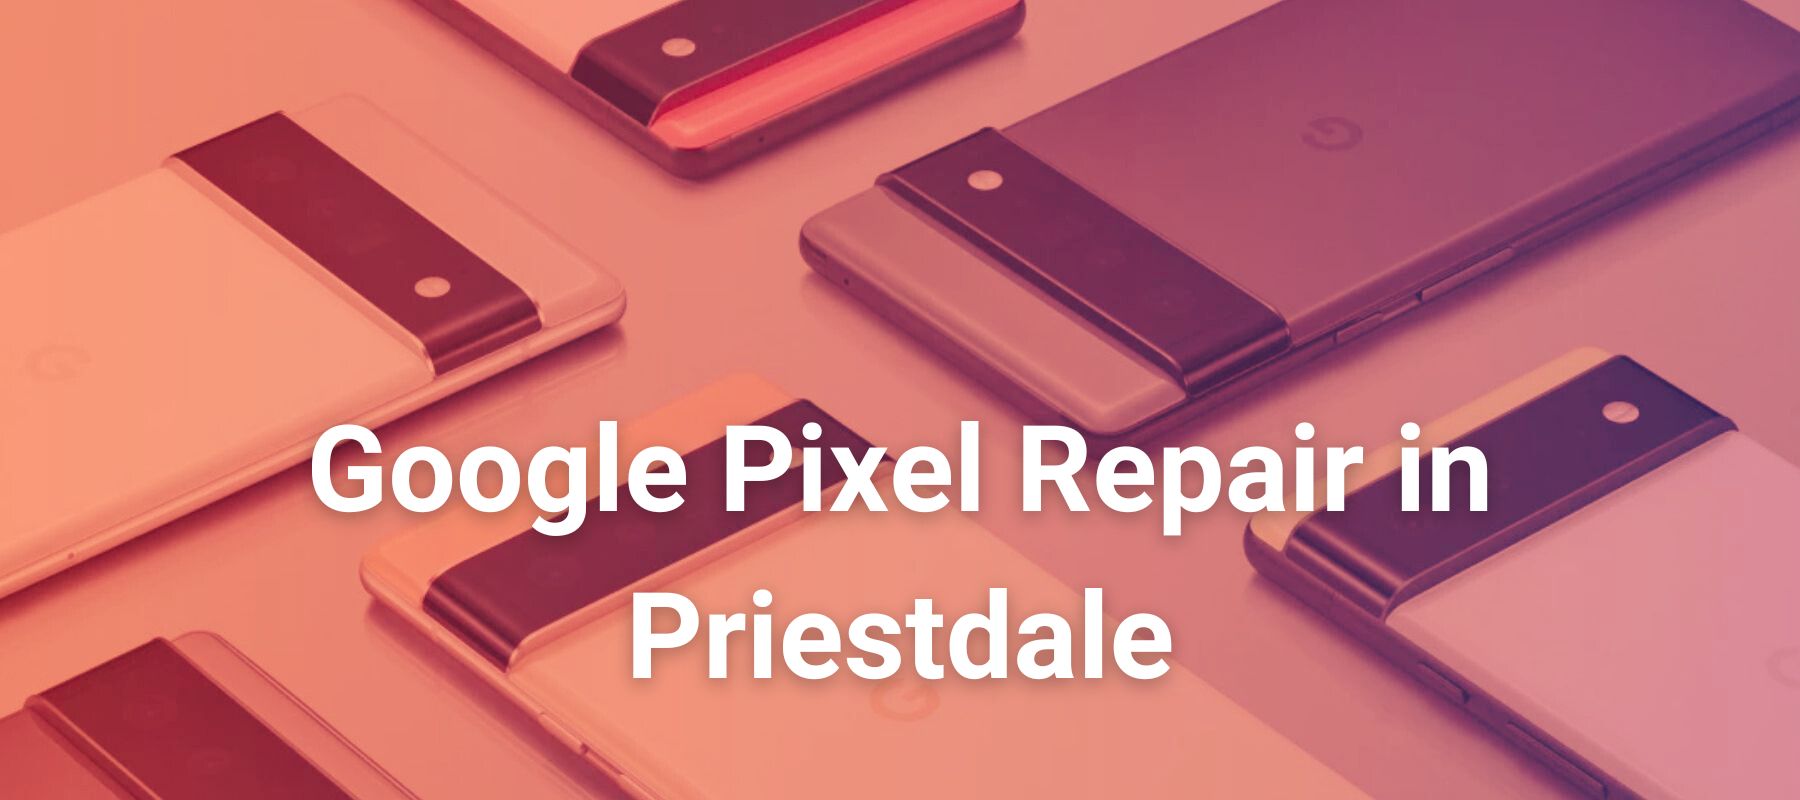 Google Pixel Repair in Priestdale